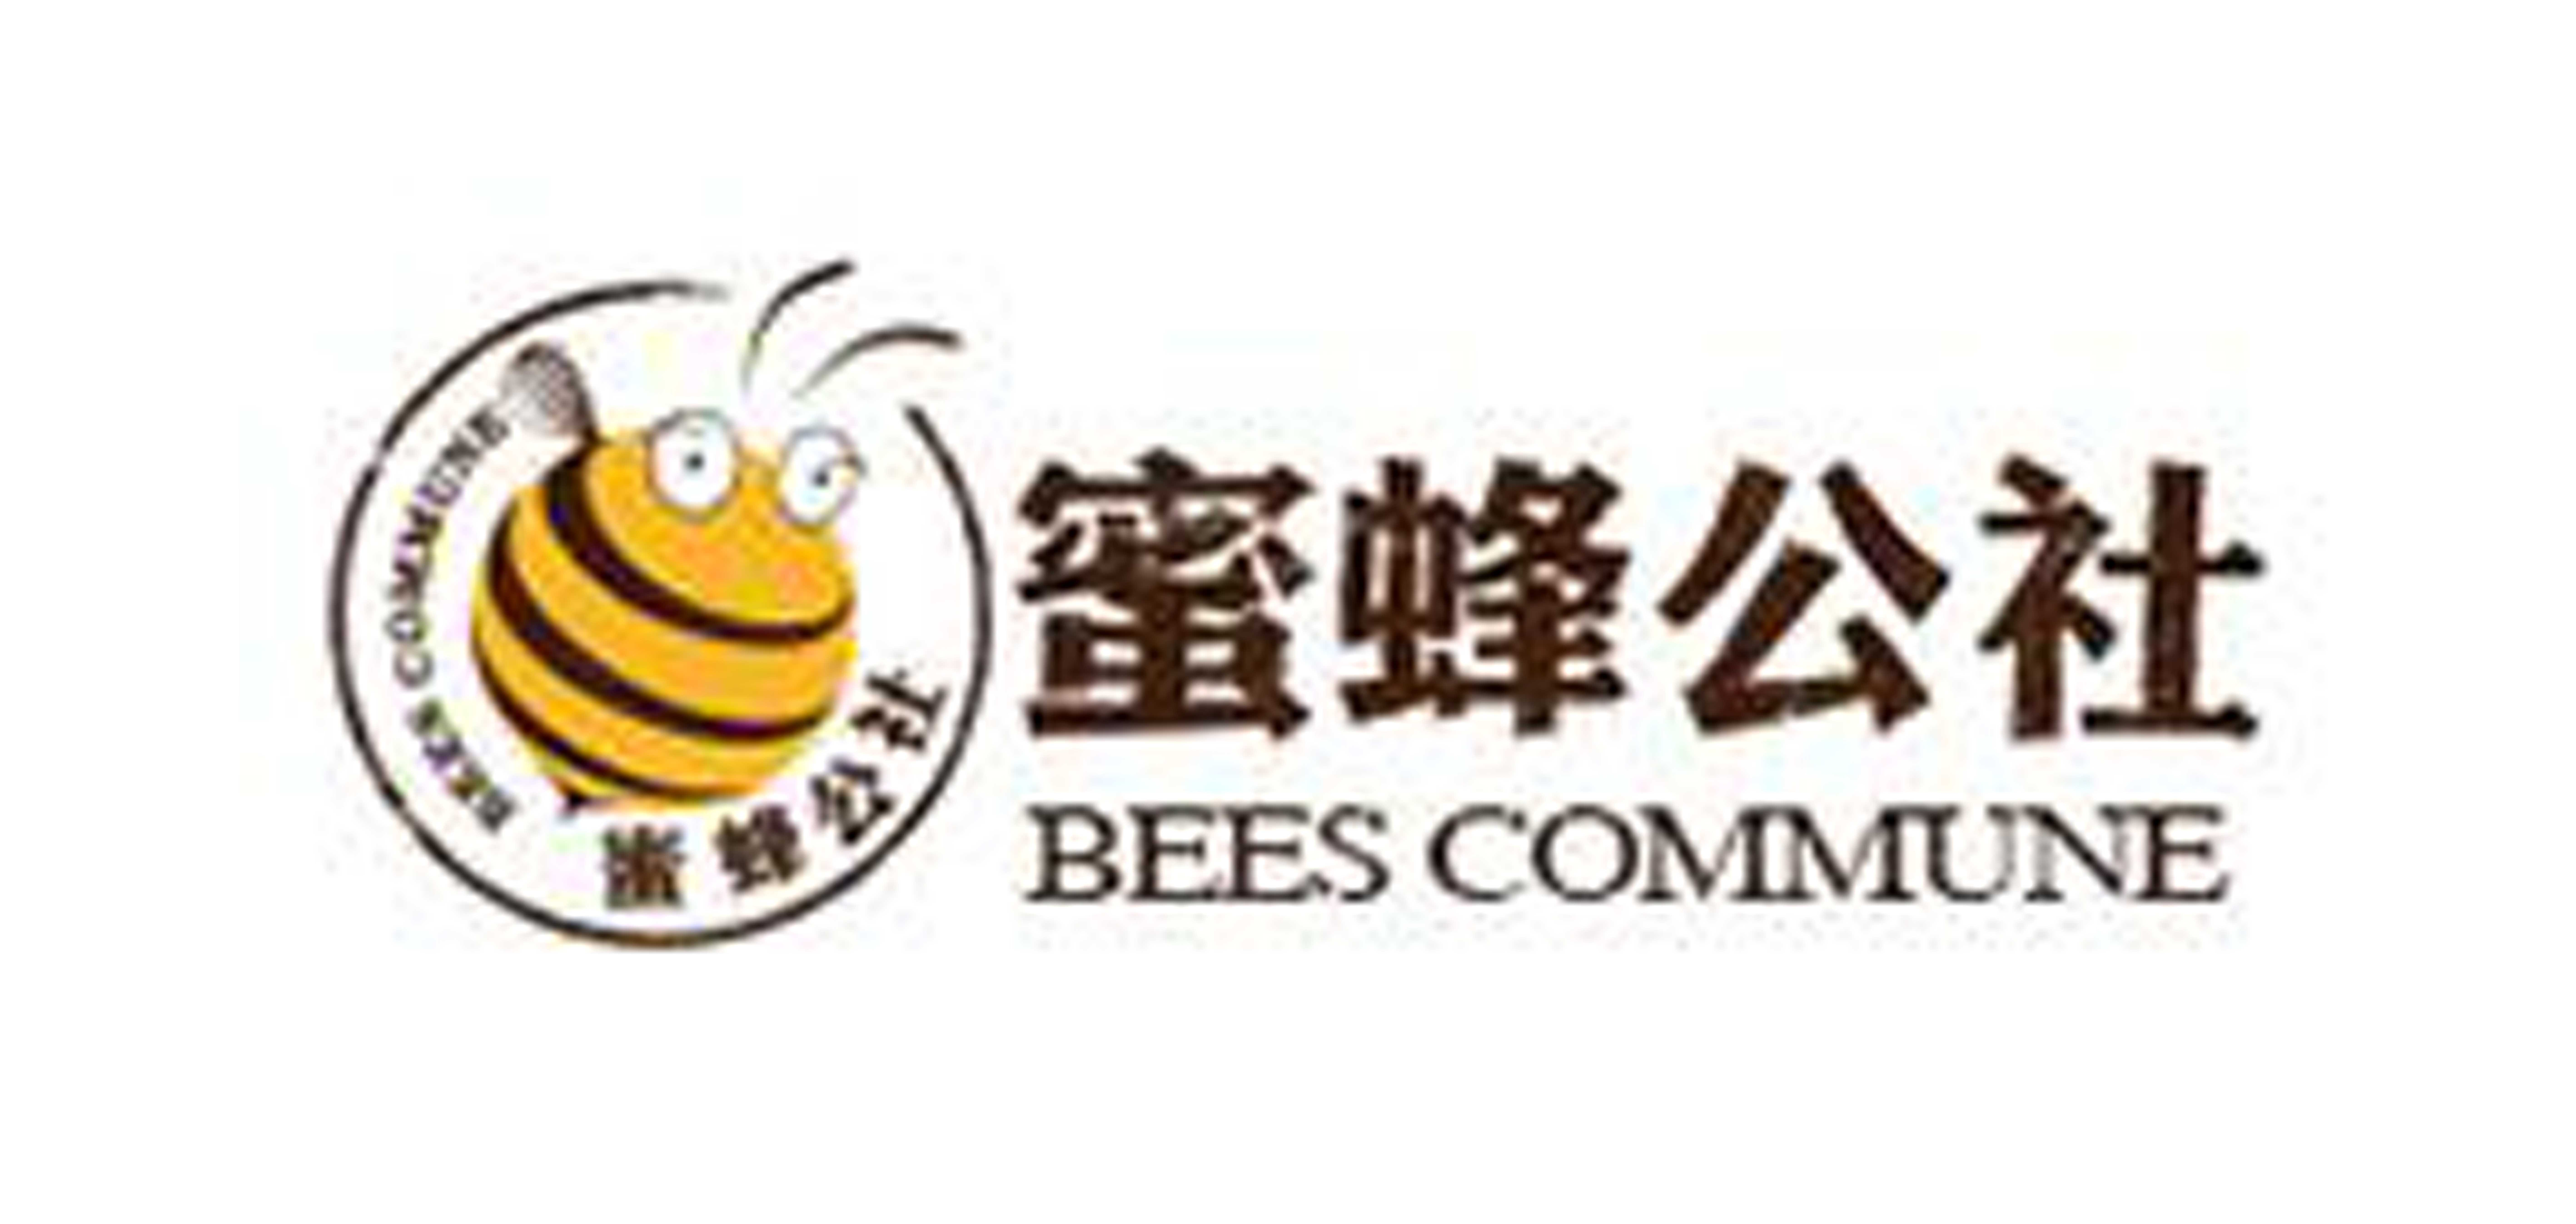 蜜蜂公社/BEES COMMUNE